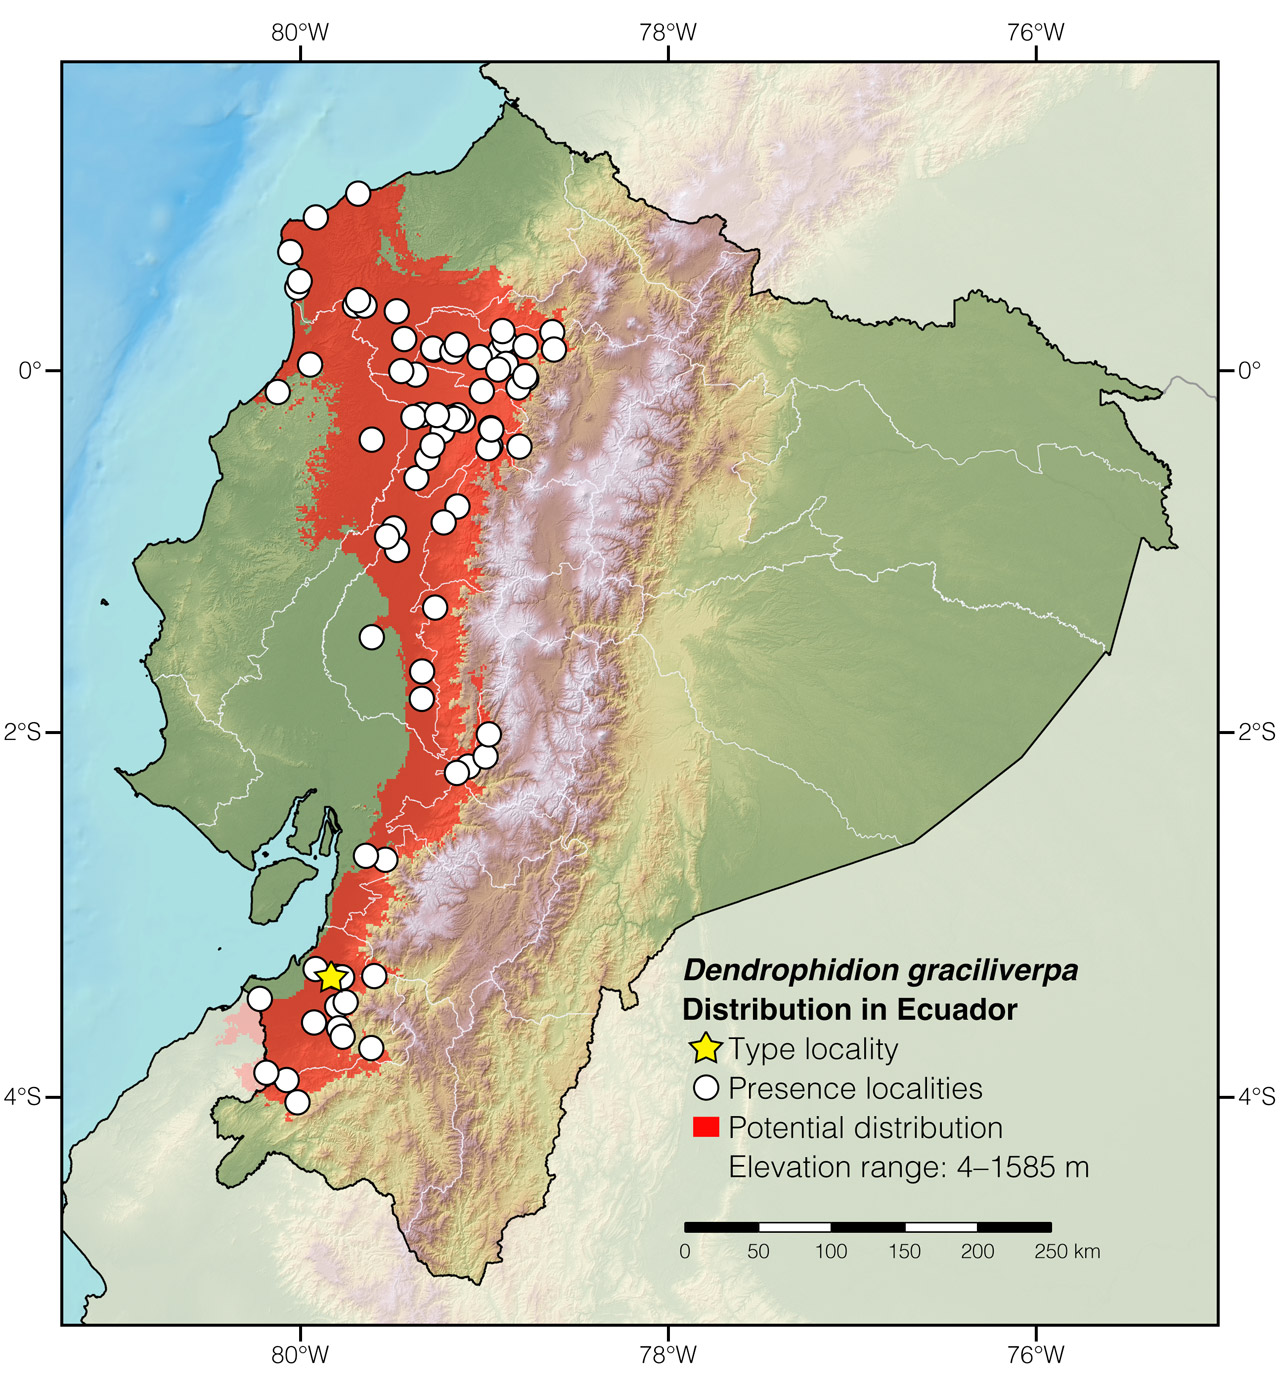 Distribution of Dendrophidion graciliverpa in Ecuador